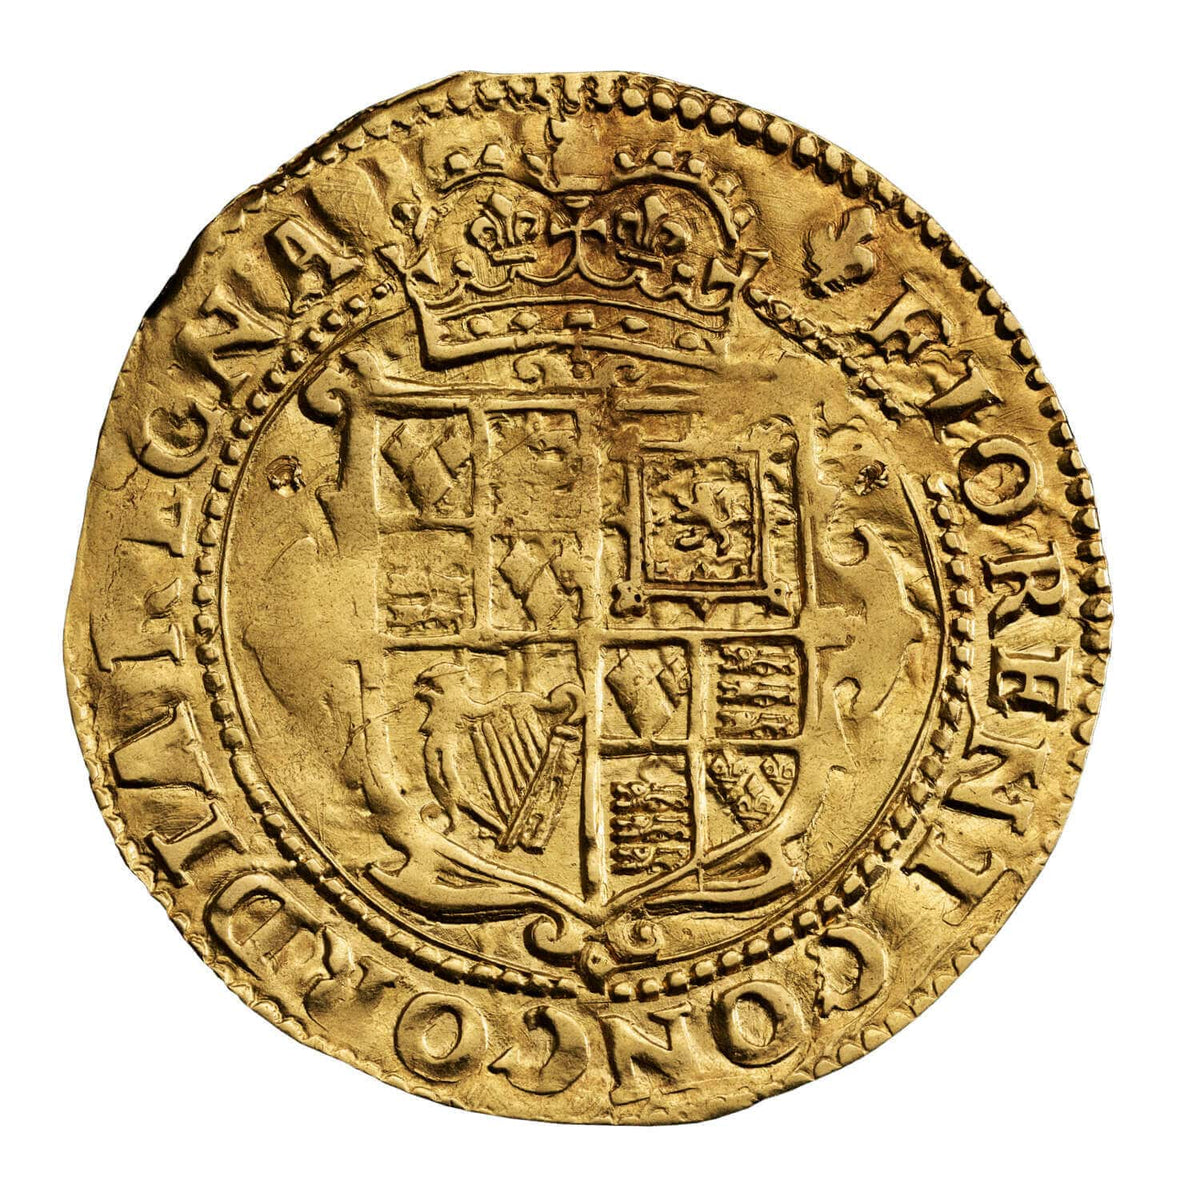 セール豊富な期間限定値下げ 1649 イングランド チャールズ1世 死刑執行令状 印章 デミライオン 純銀製 記章 メダル コイン レリーフ 王家 紋章 家紋 その他